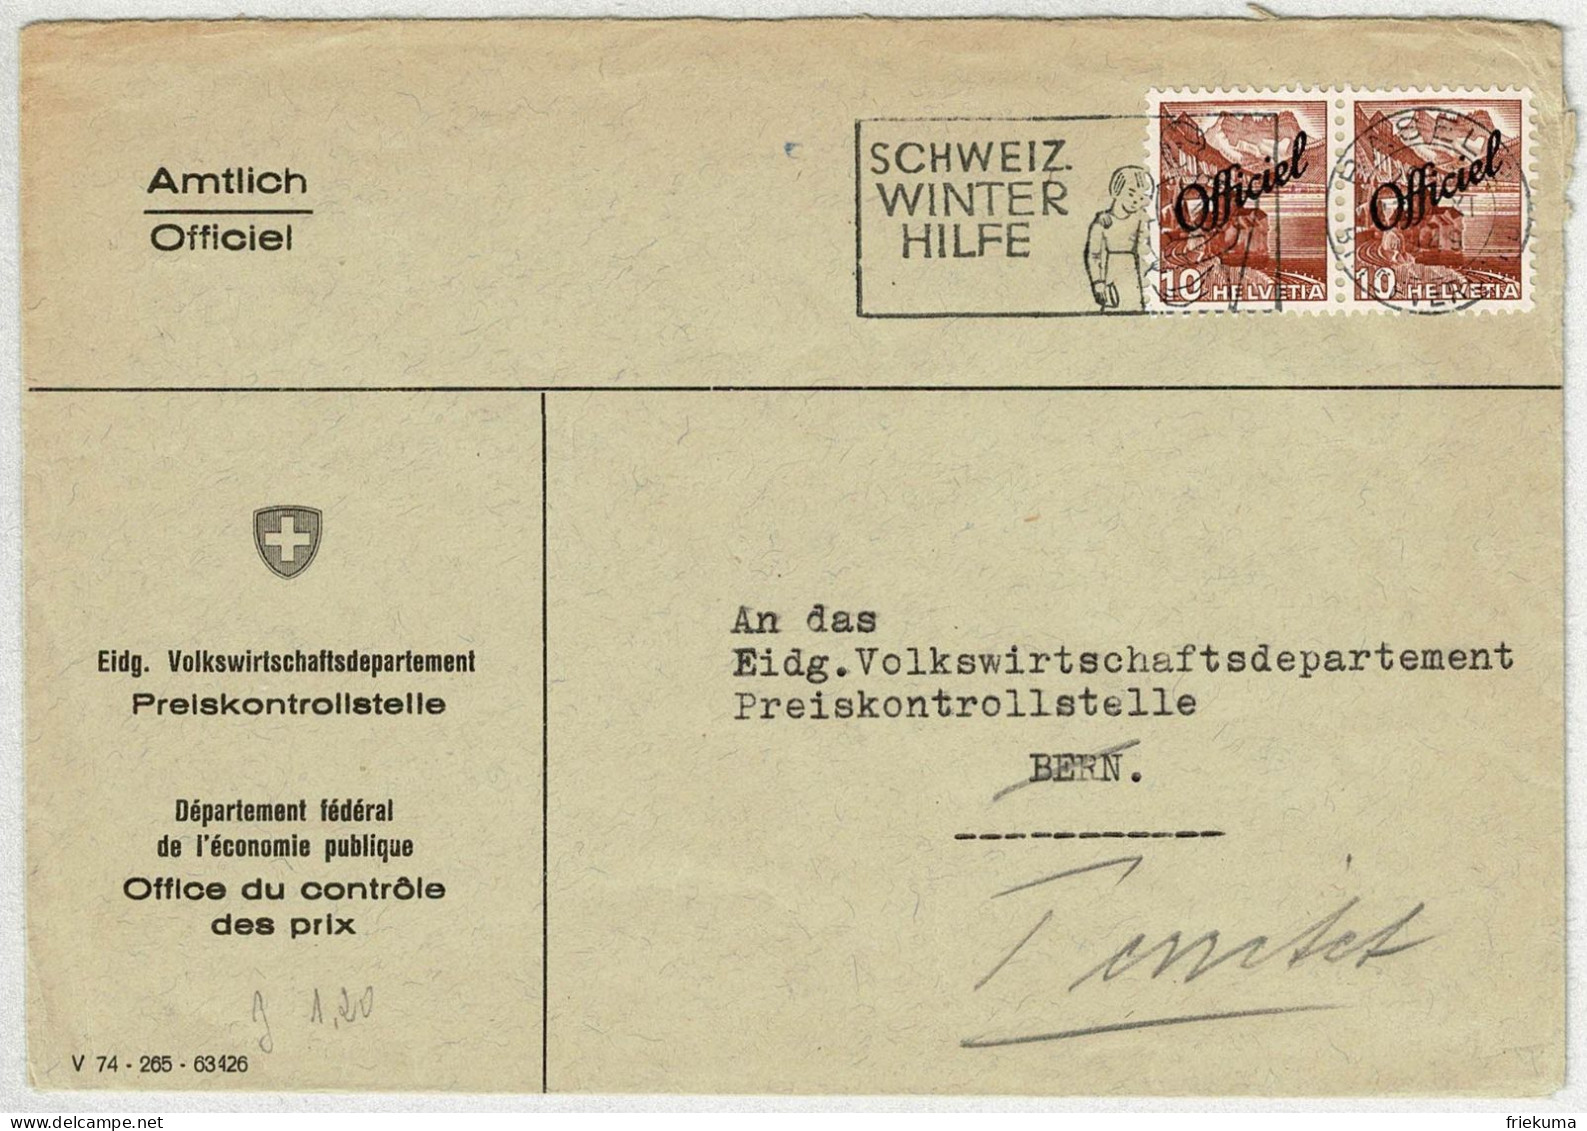 Schweiz 1949, Brief Amtlich Basel - Bern, Nachsendung Territet, Neue Landschaftsbilder Officiel, Preiskontrollstelle - Service